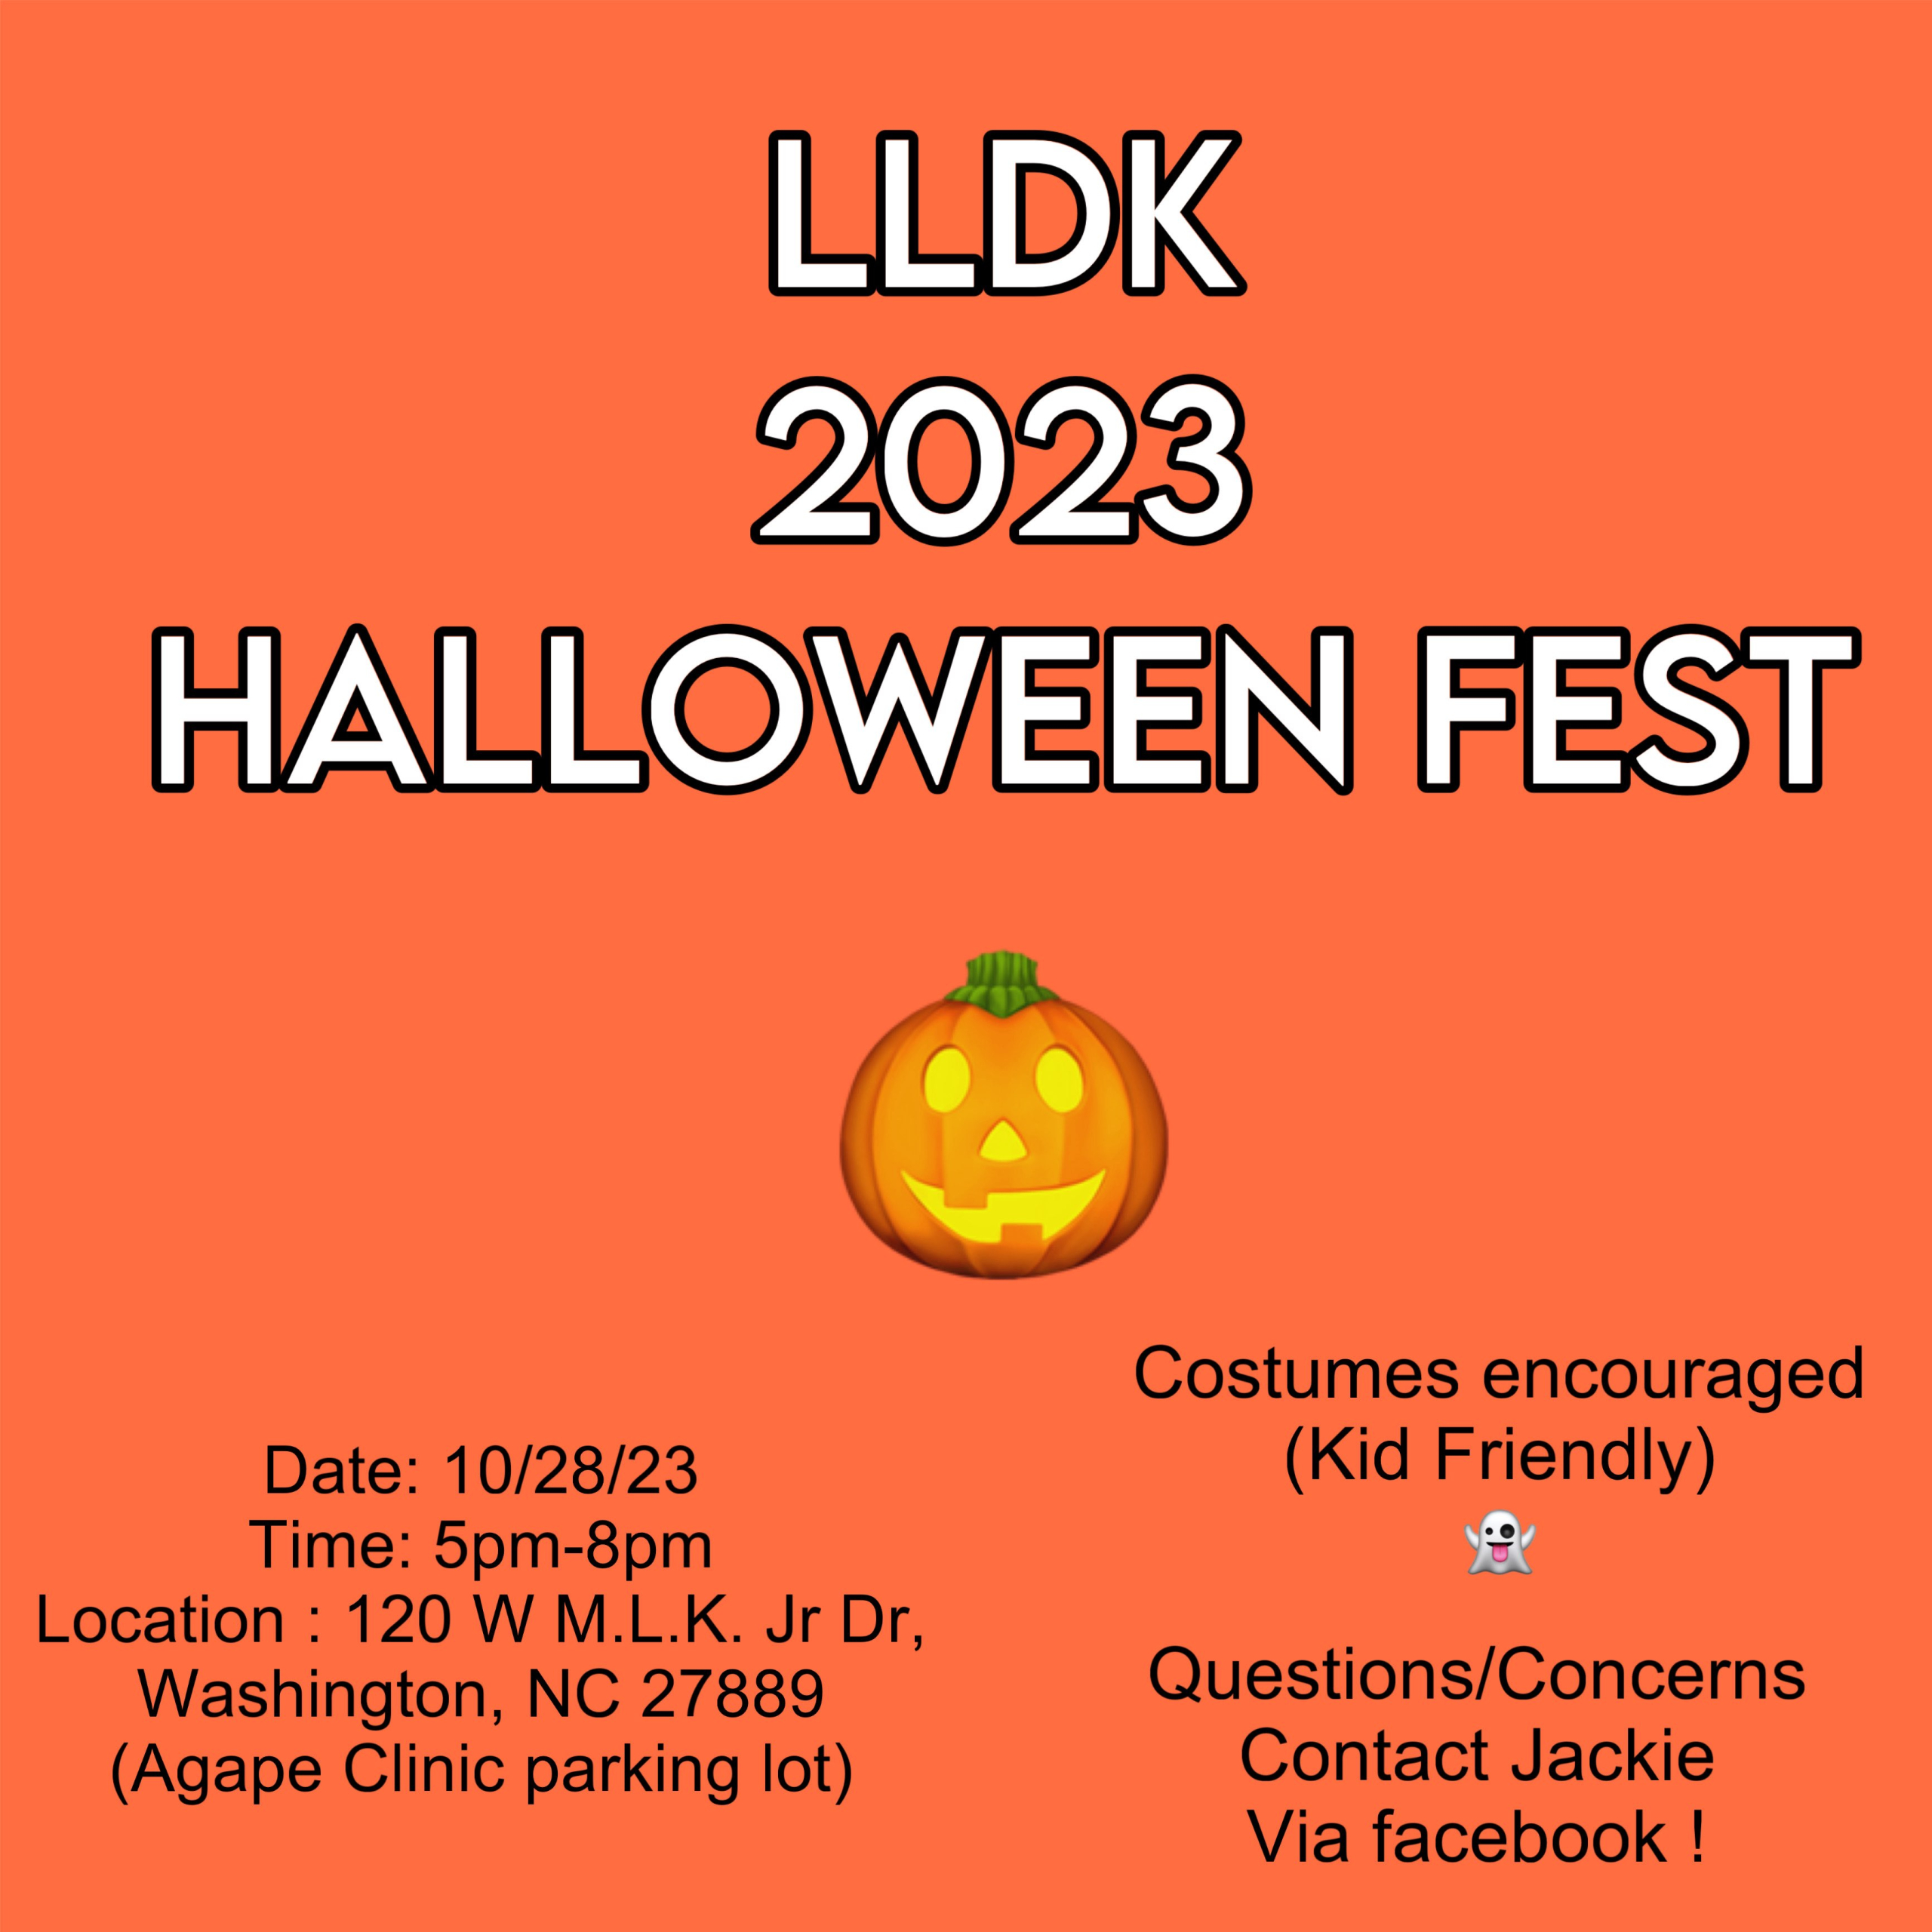 LLDK Halloween Fest 2023